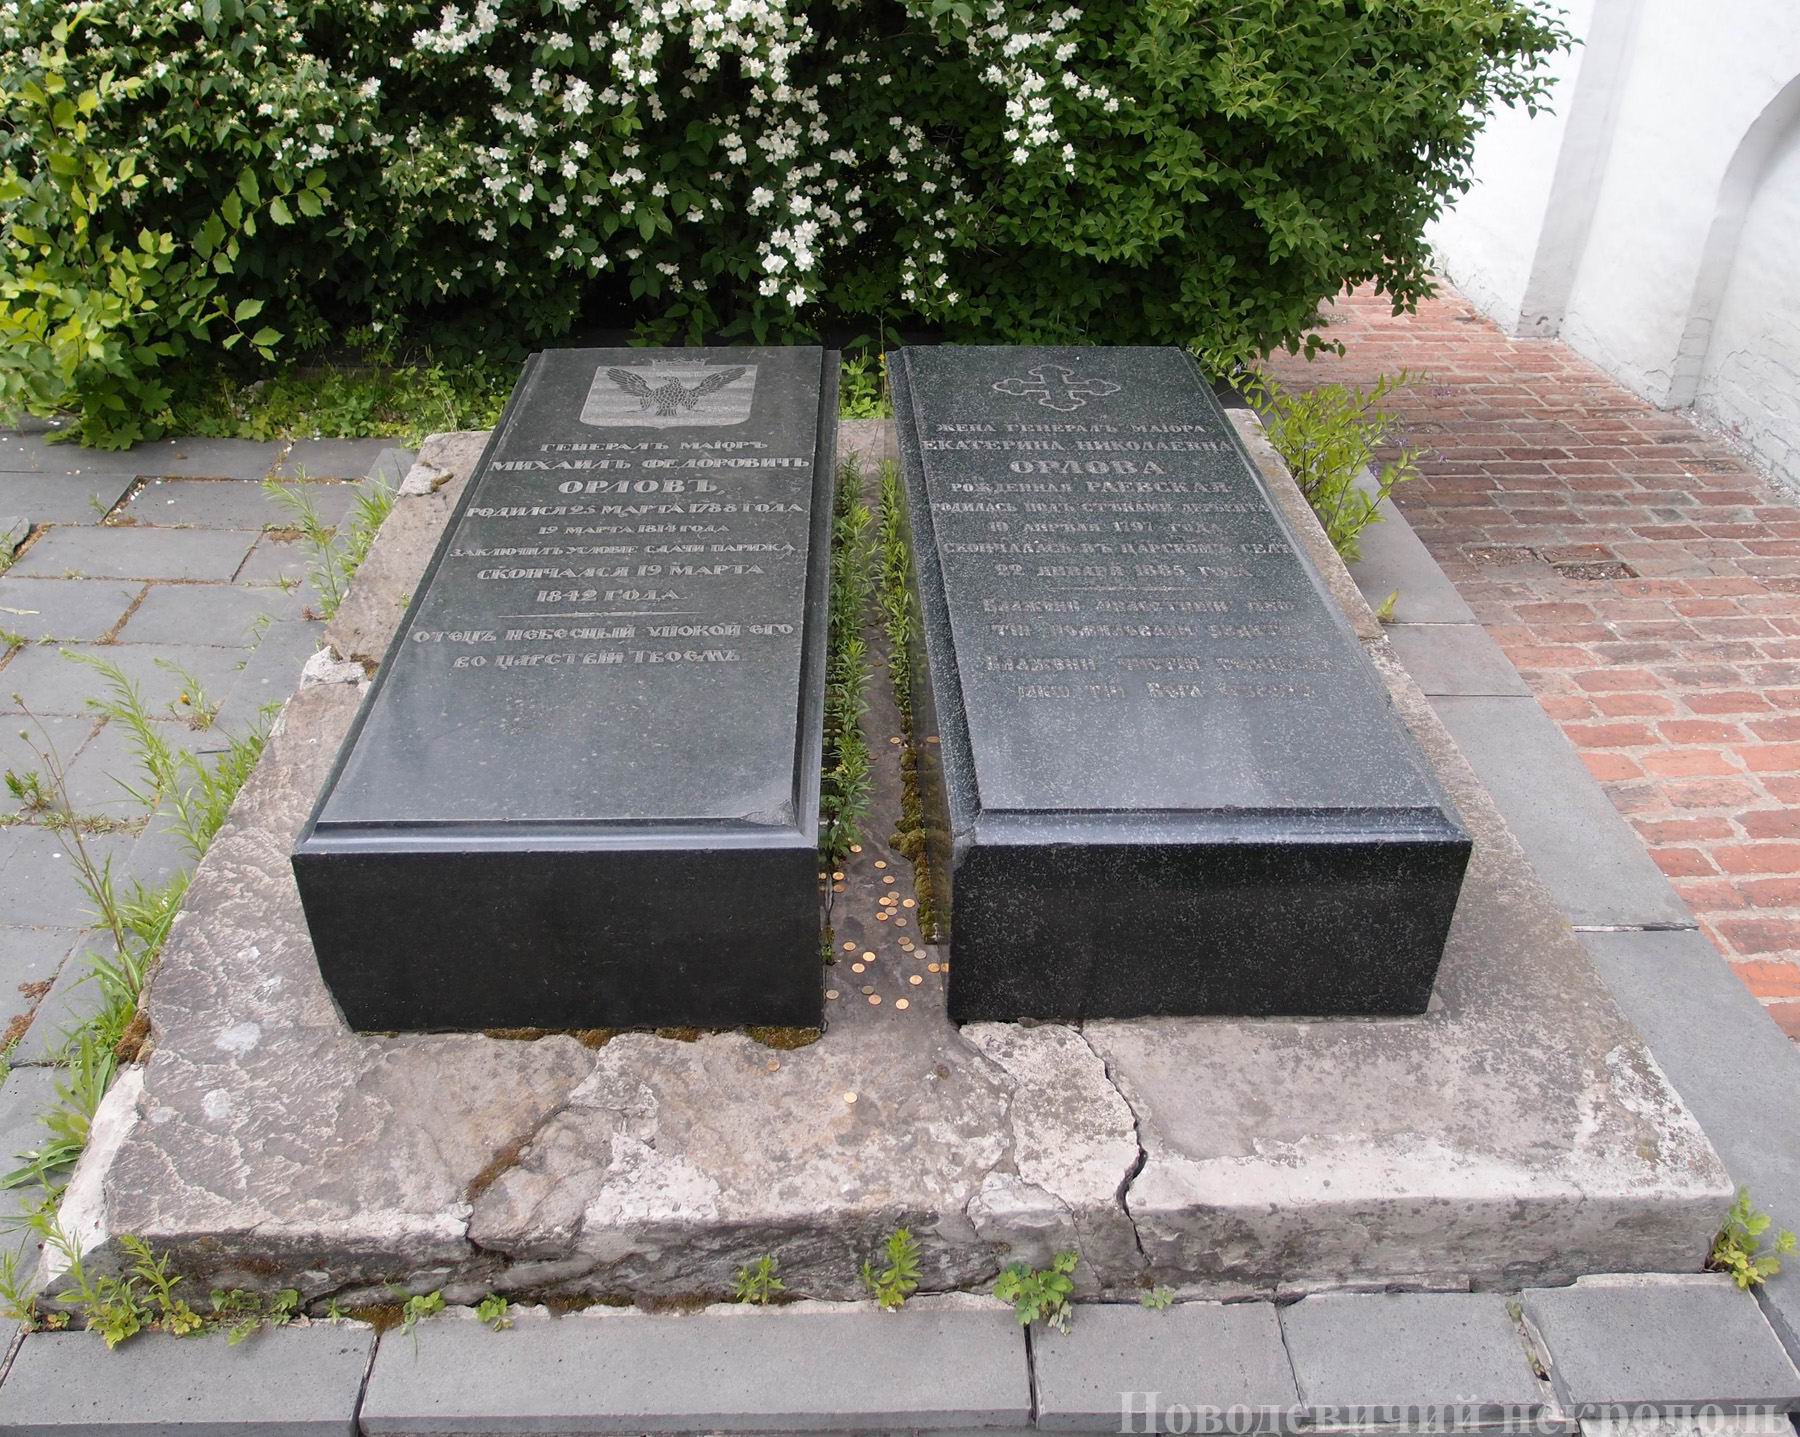 Памятник на могиле Орлова М.Ф. (1788-1842), в Новодевичьем монастыре. Нажмите левую кнопку мыши, чтобы увидеть фрагмент.